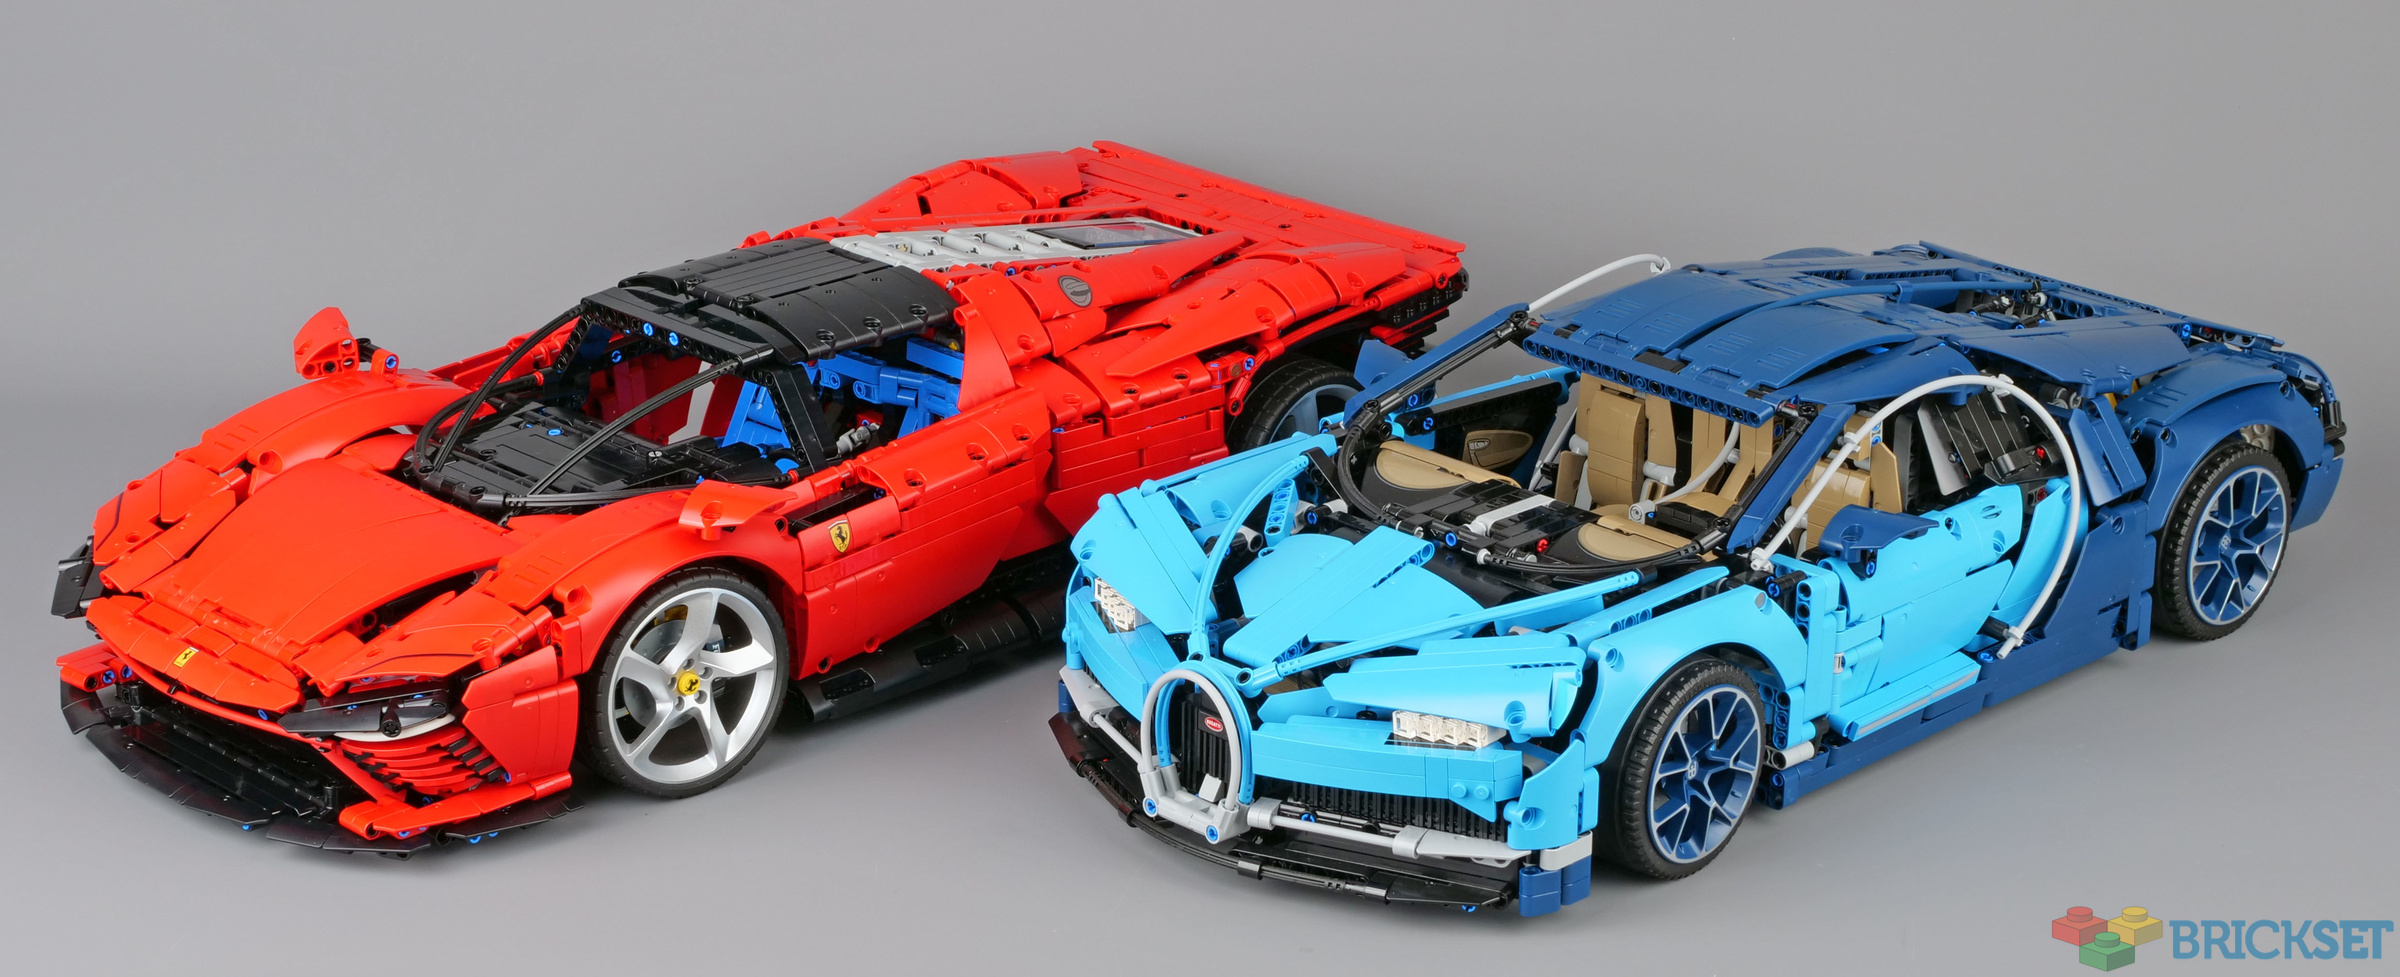 Lego Technic Ferrari Daytona SP3 vs Lamborghini Sián FKP 37 » Lego Sets  Guide